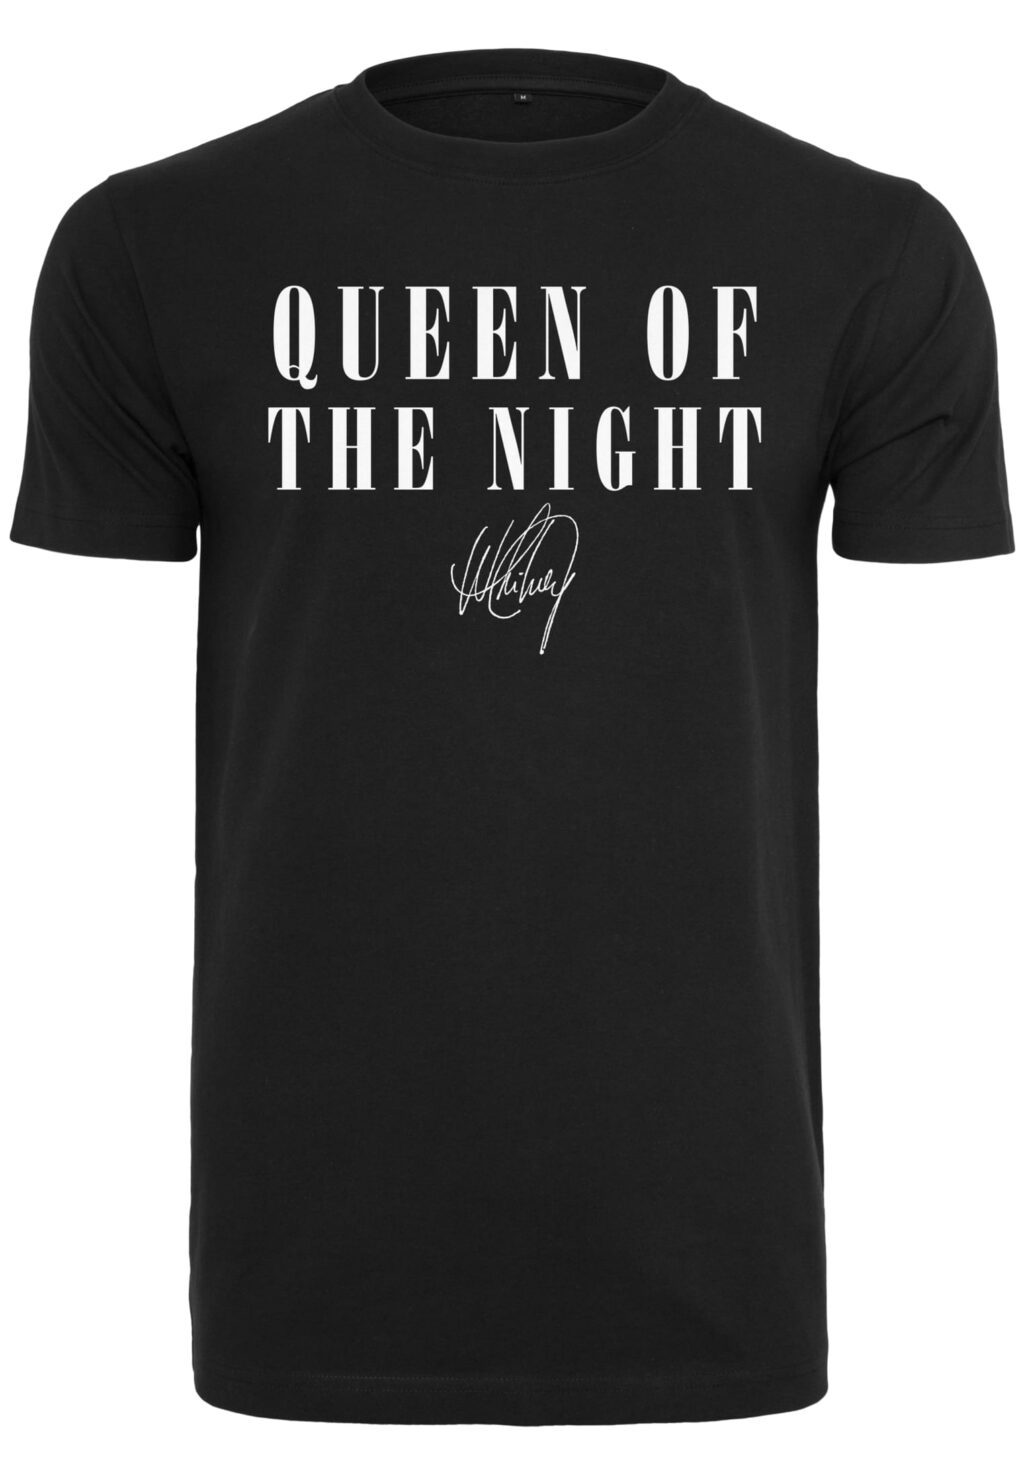 Ladies Whitney Queen Of The Night Tee black MC848